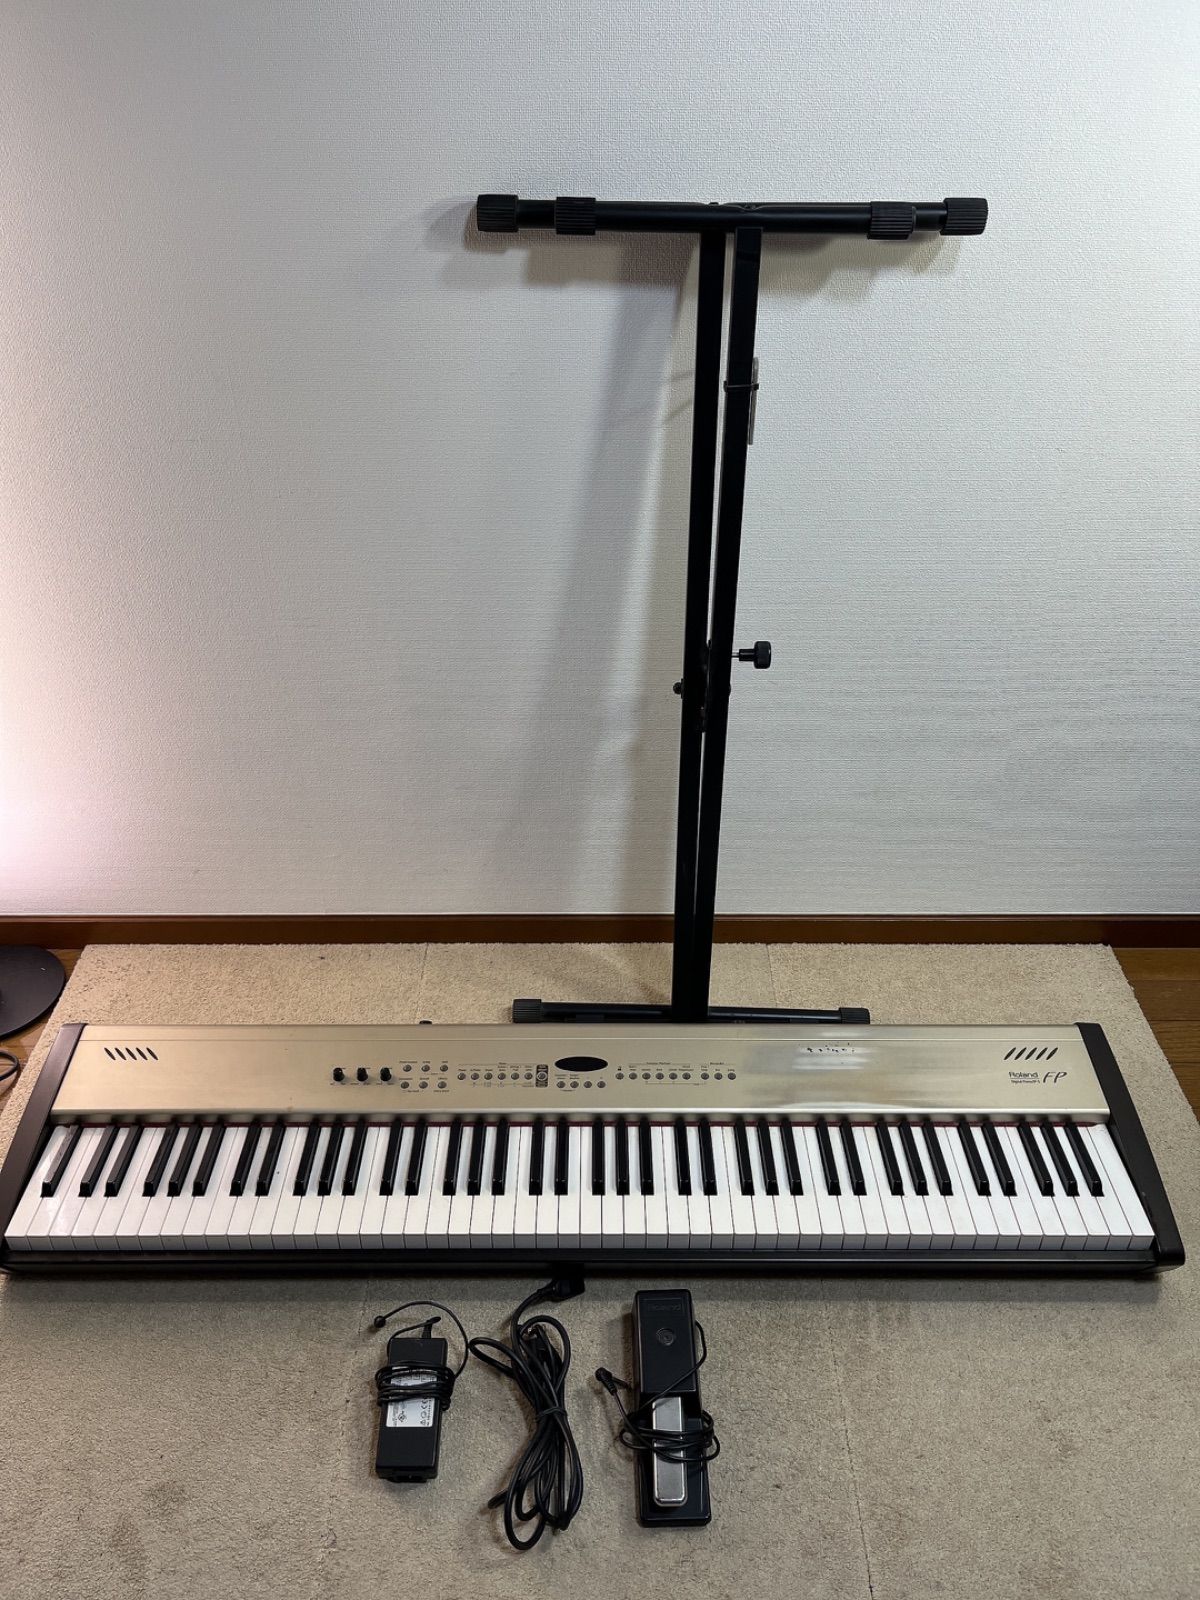 ローランド 電子ピアノ FP-5 スタンド付き - 電子楽器